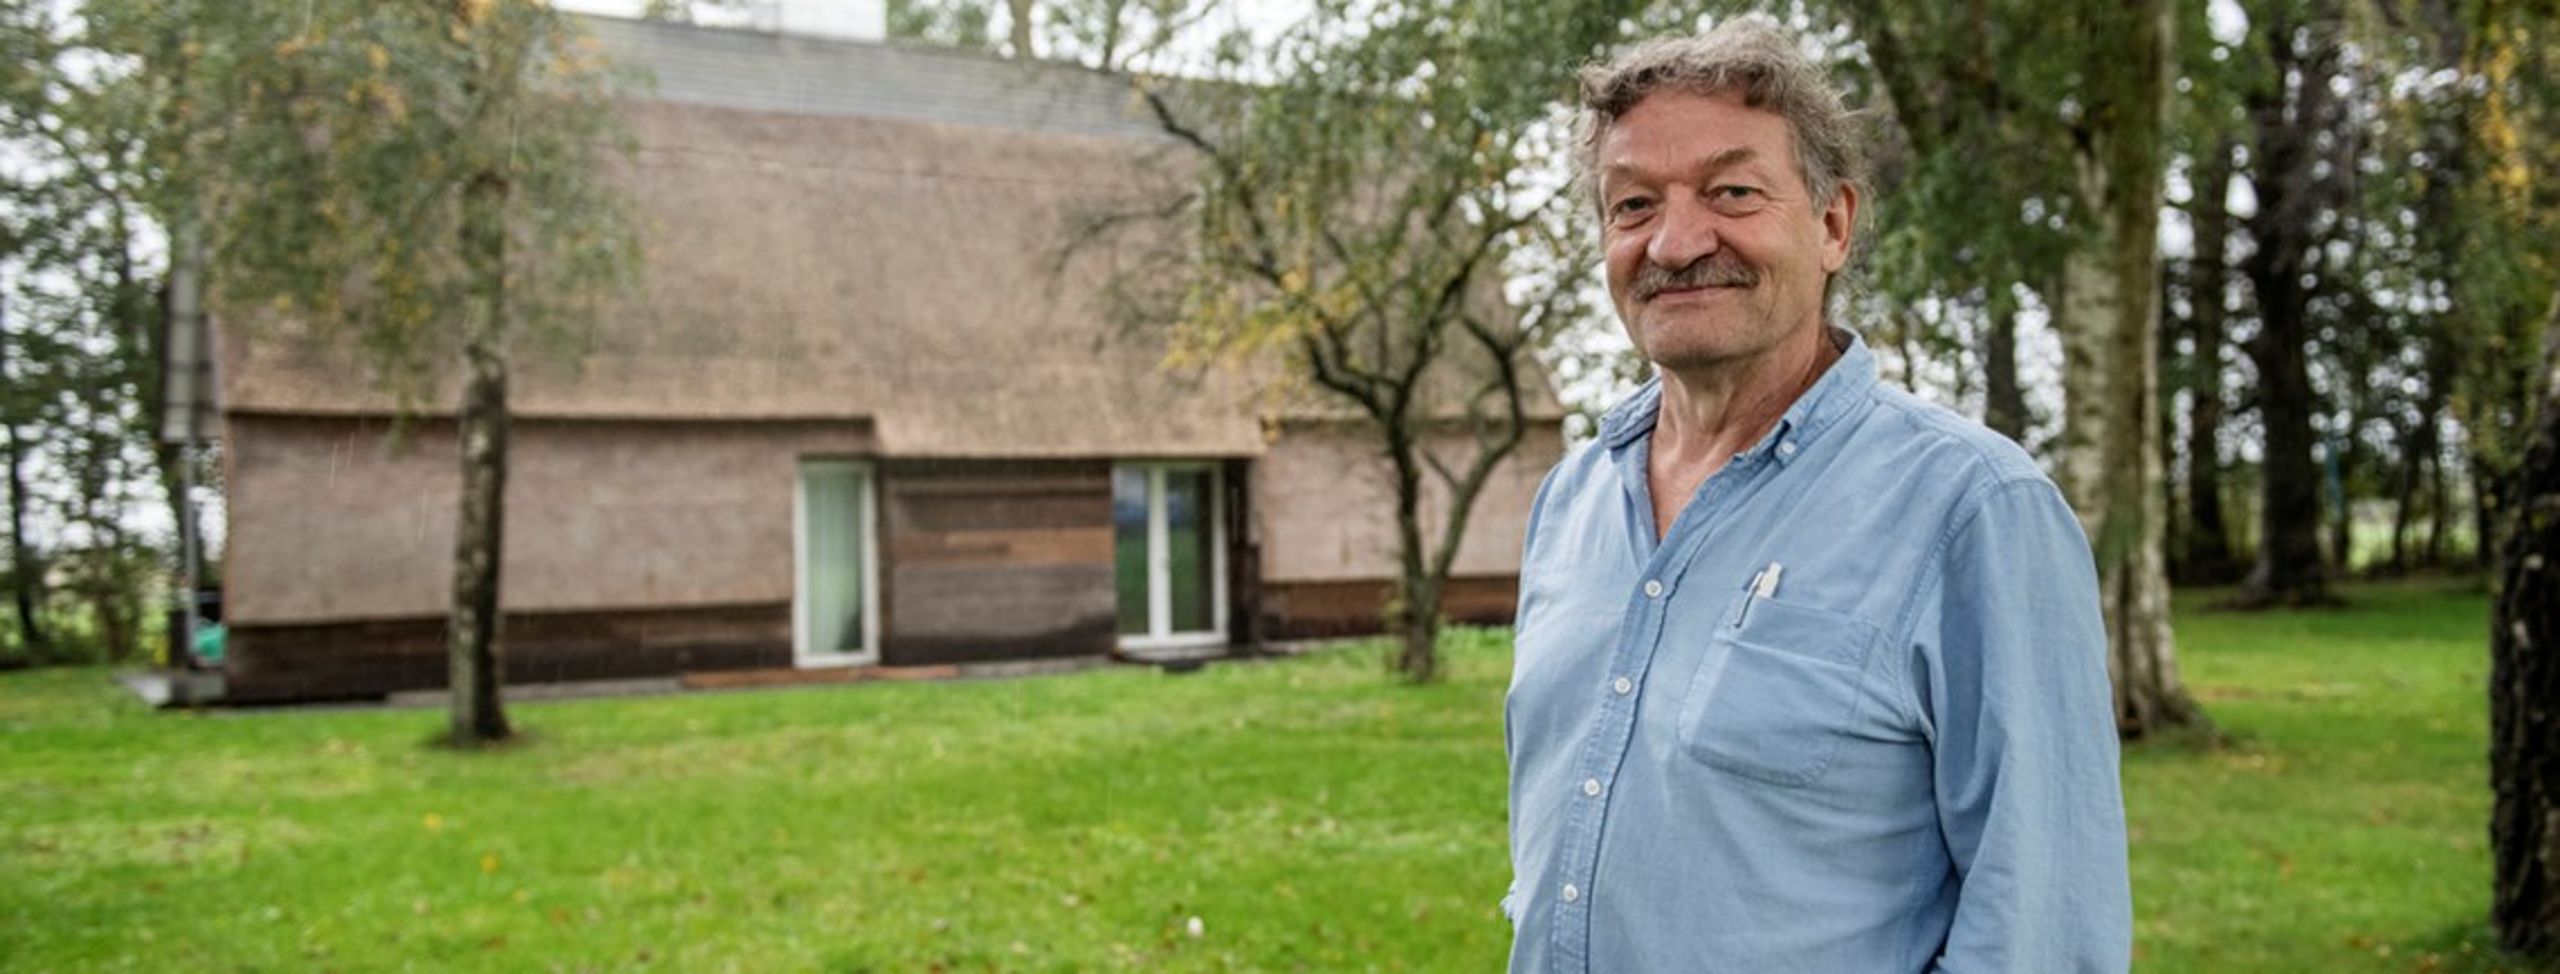 Der er noget "fundamental galt med den måde, vi bygger huse på i Danmark," mener Lars Jørgensen, der har bygget økologisk siden 80’erne.